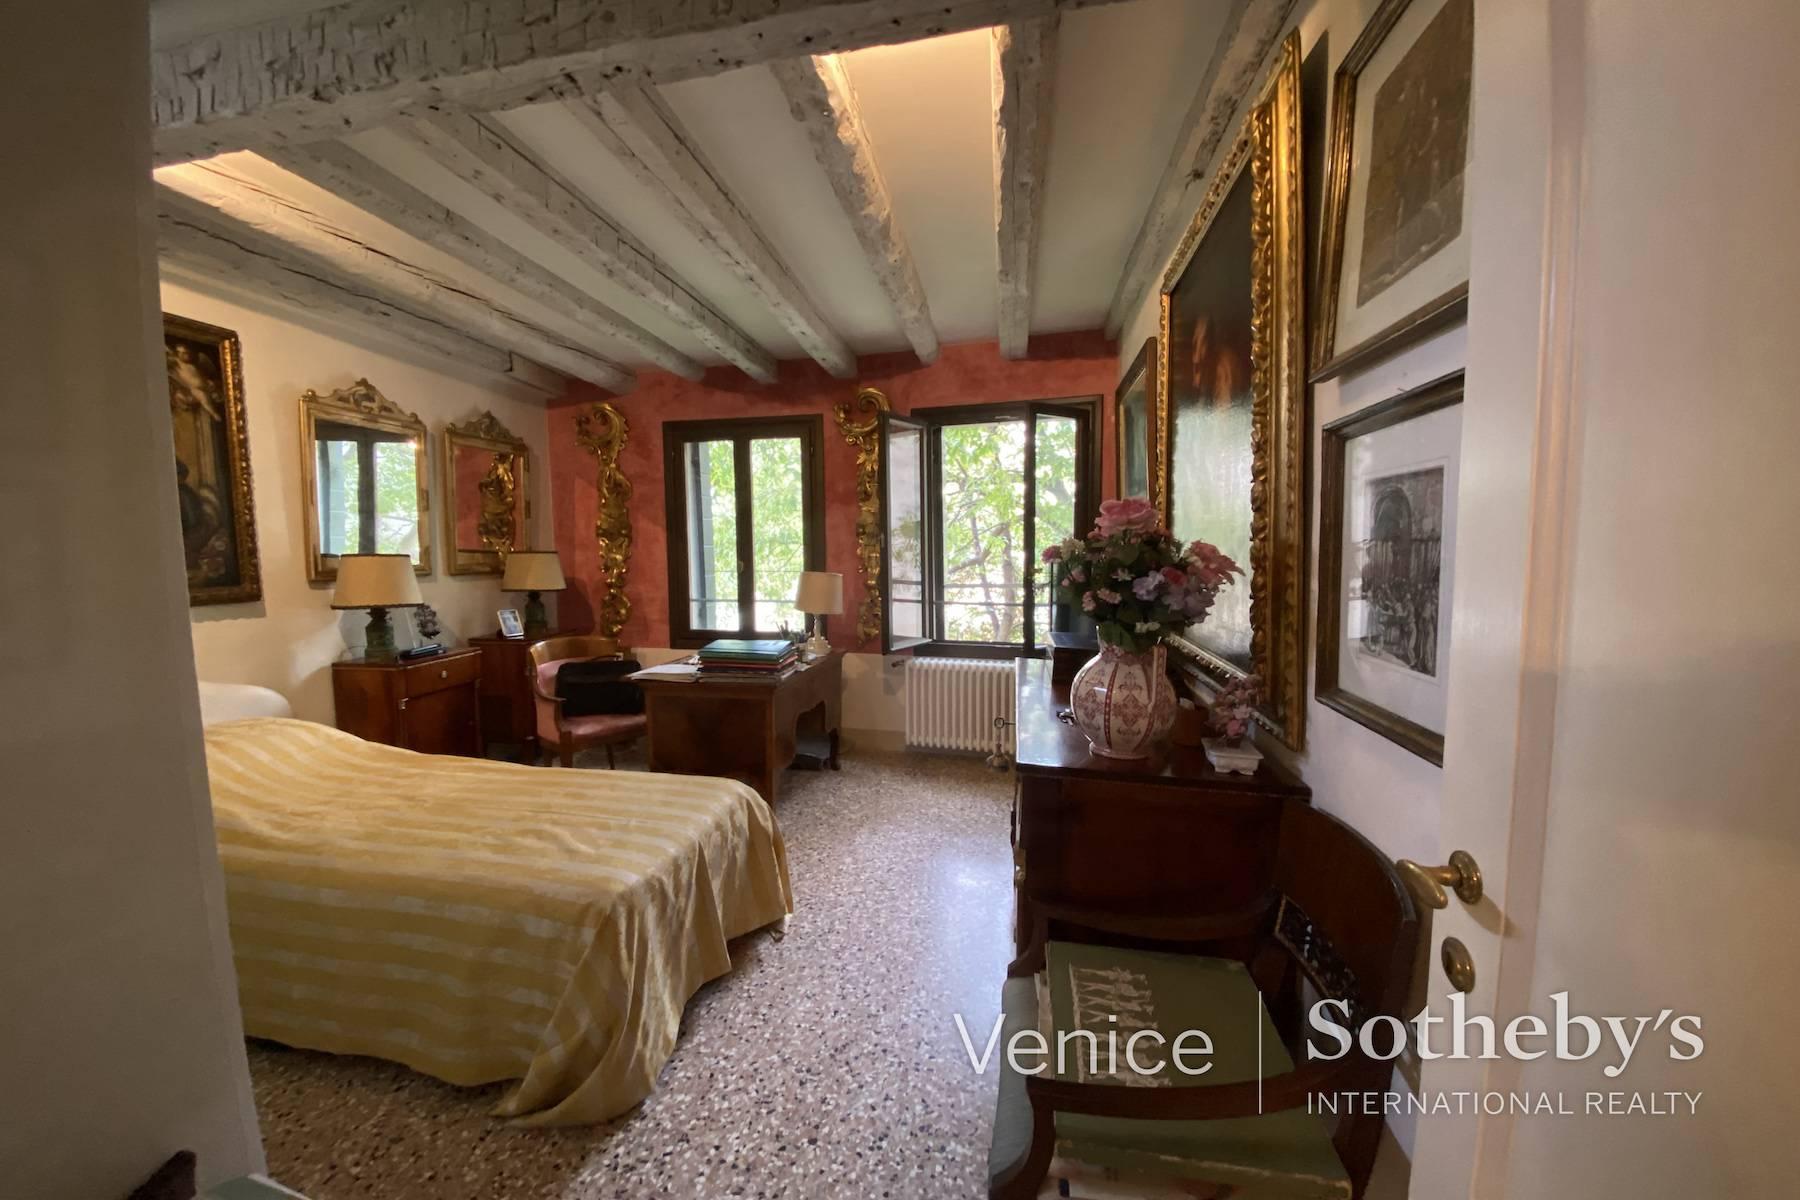 Un charmant appartement mezzanine dans un magnifique palazzetto gothique - 7